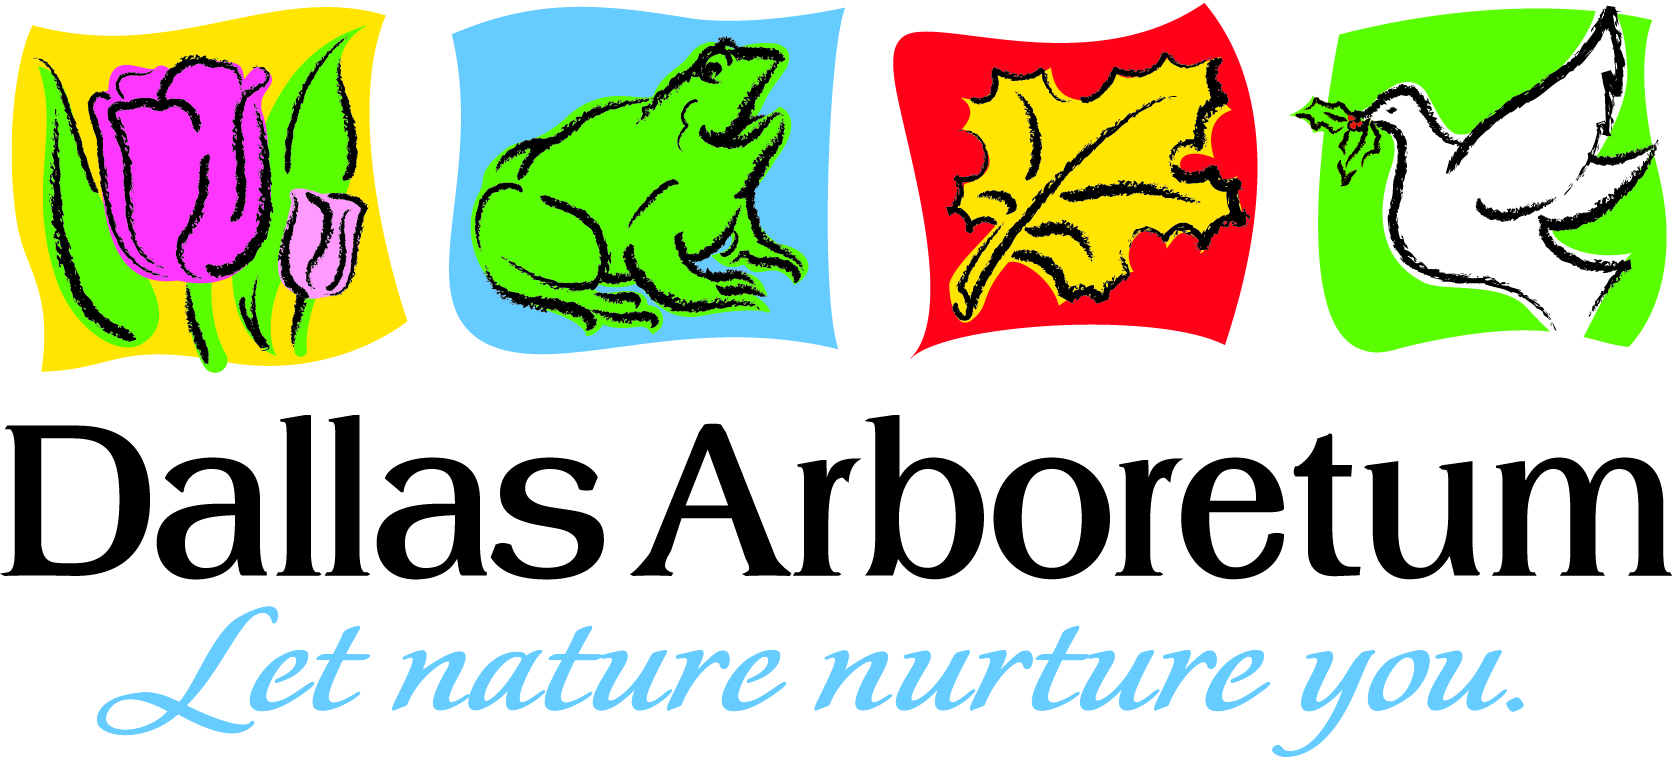 Dallas Arboretum logo